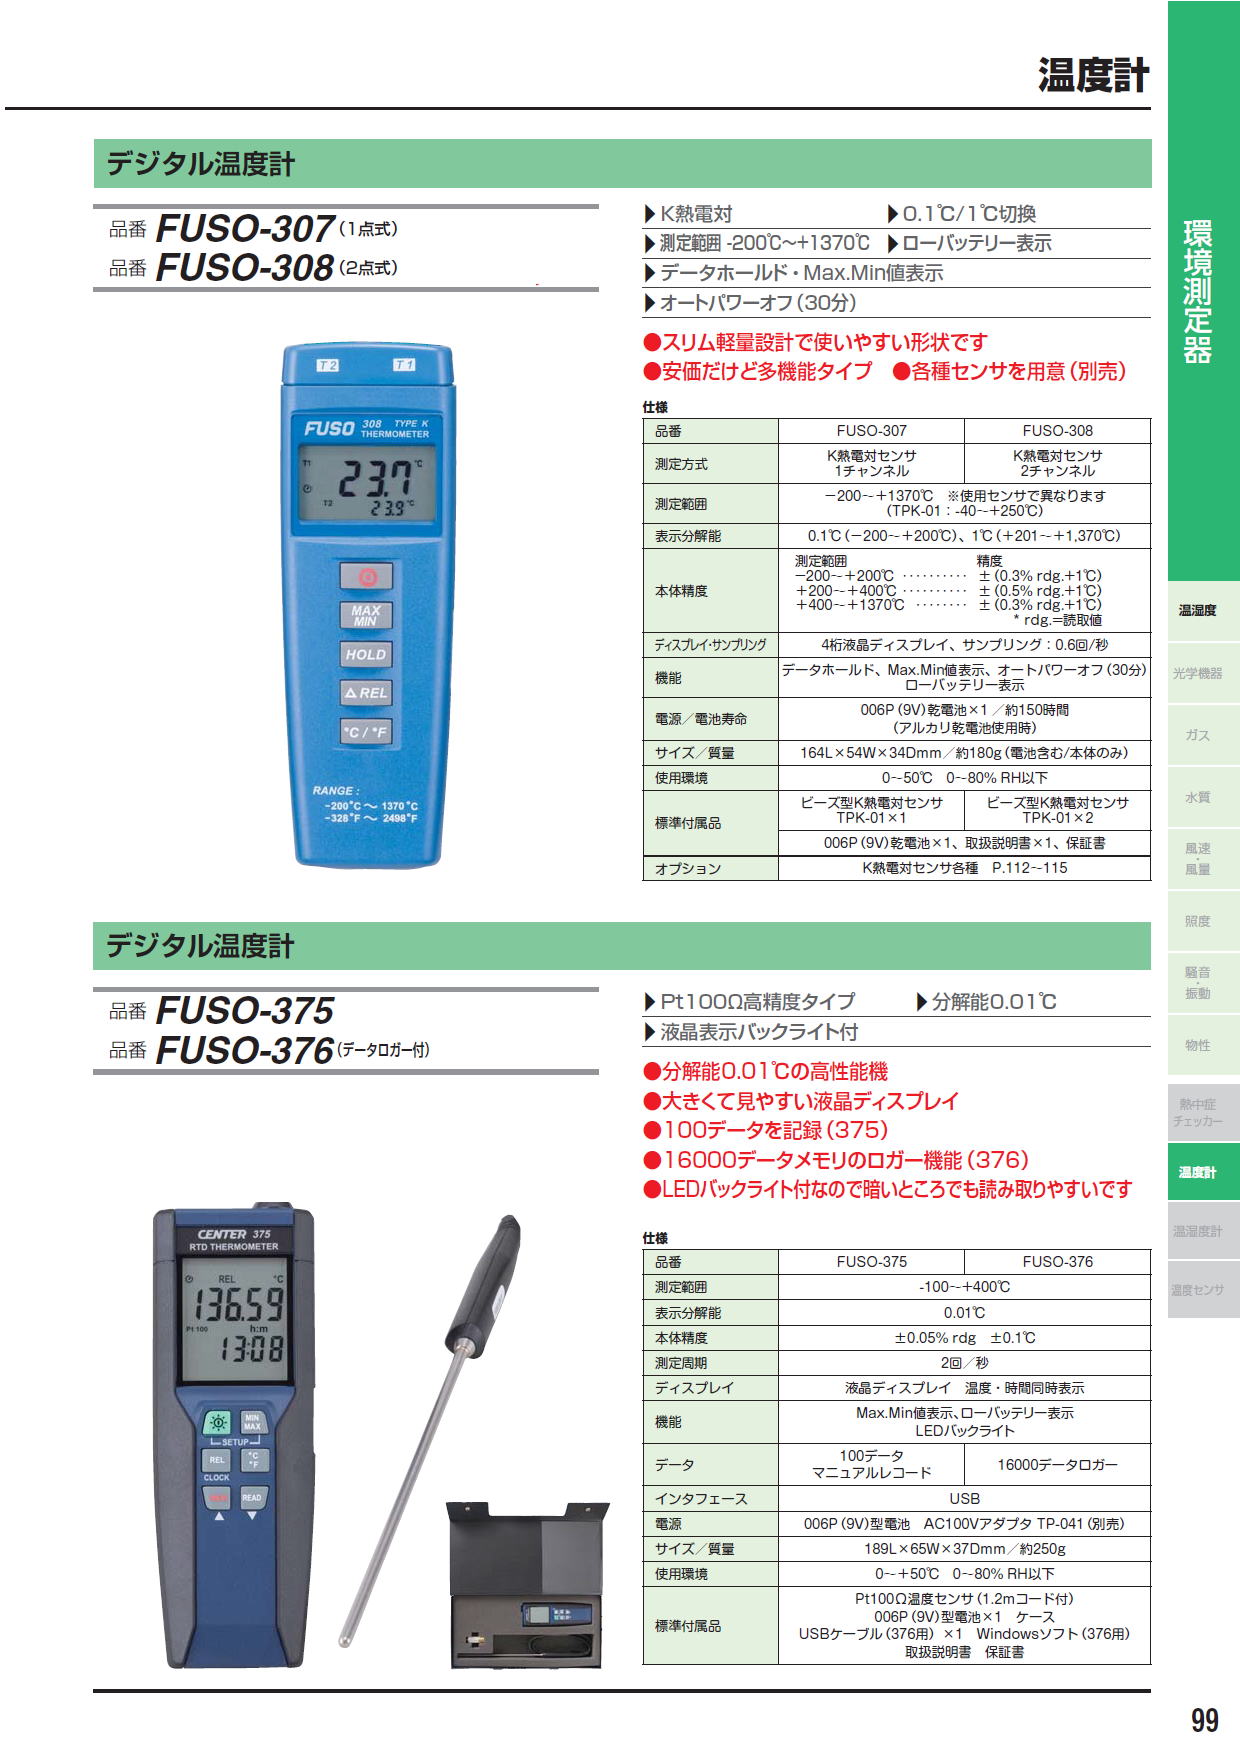 デジタル温度計　/FUSO-307（1点式）/FUSO-308（2点式）/FUSO-375/FUSO-376（データロガー付）/